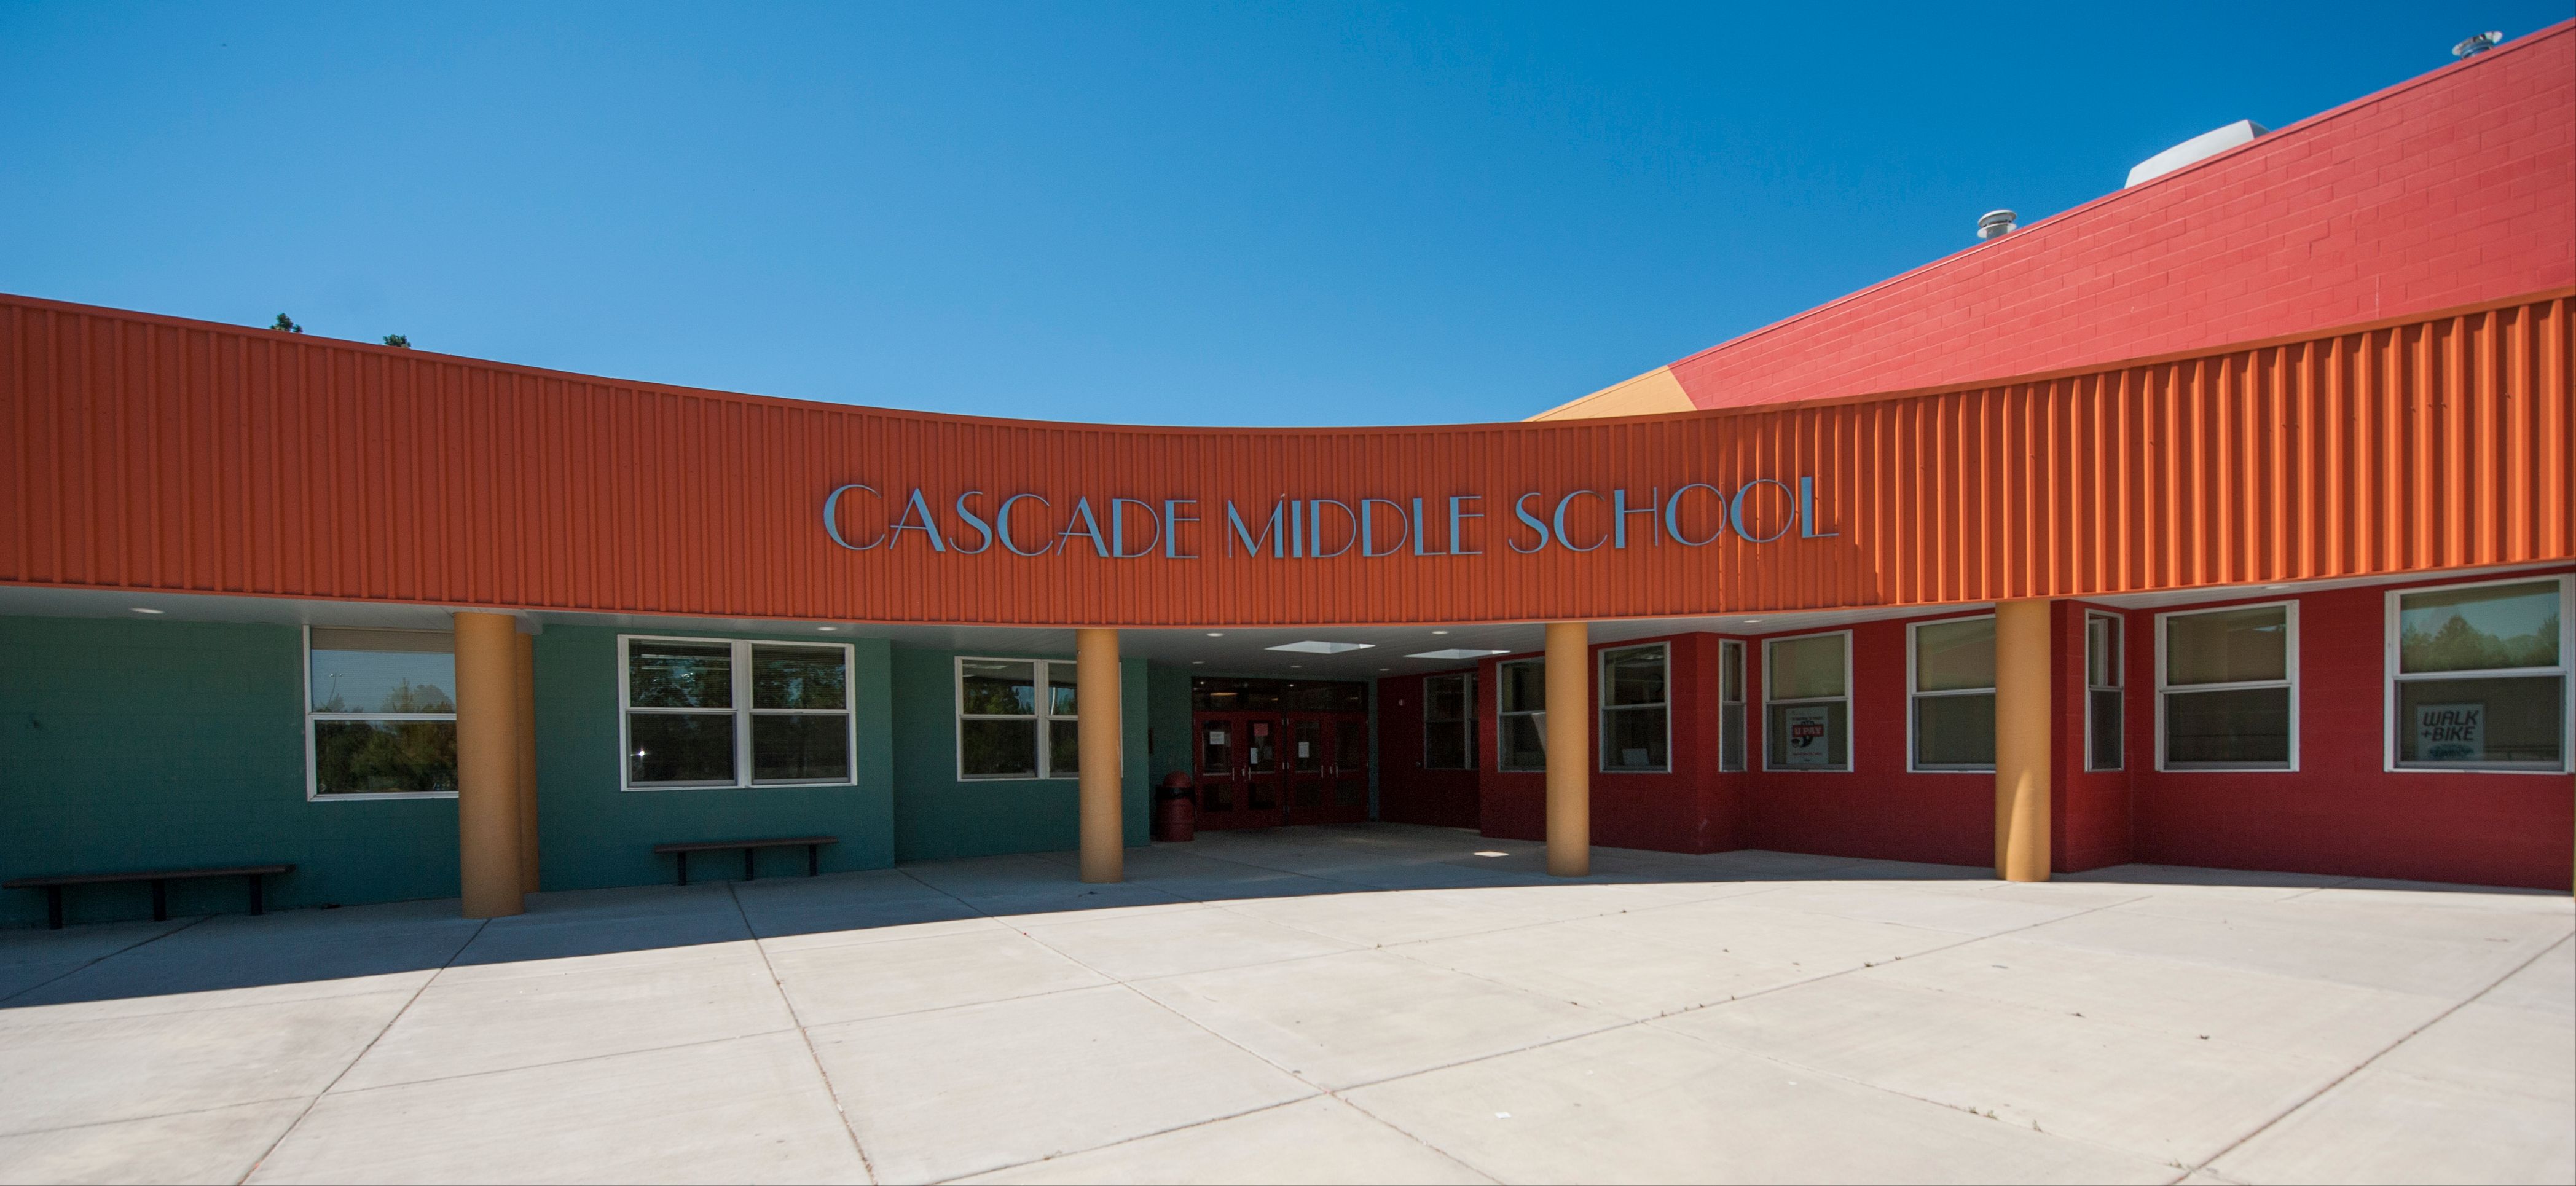 Cascade Middle School exterior